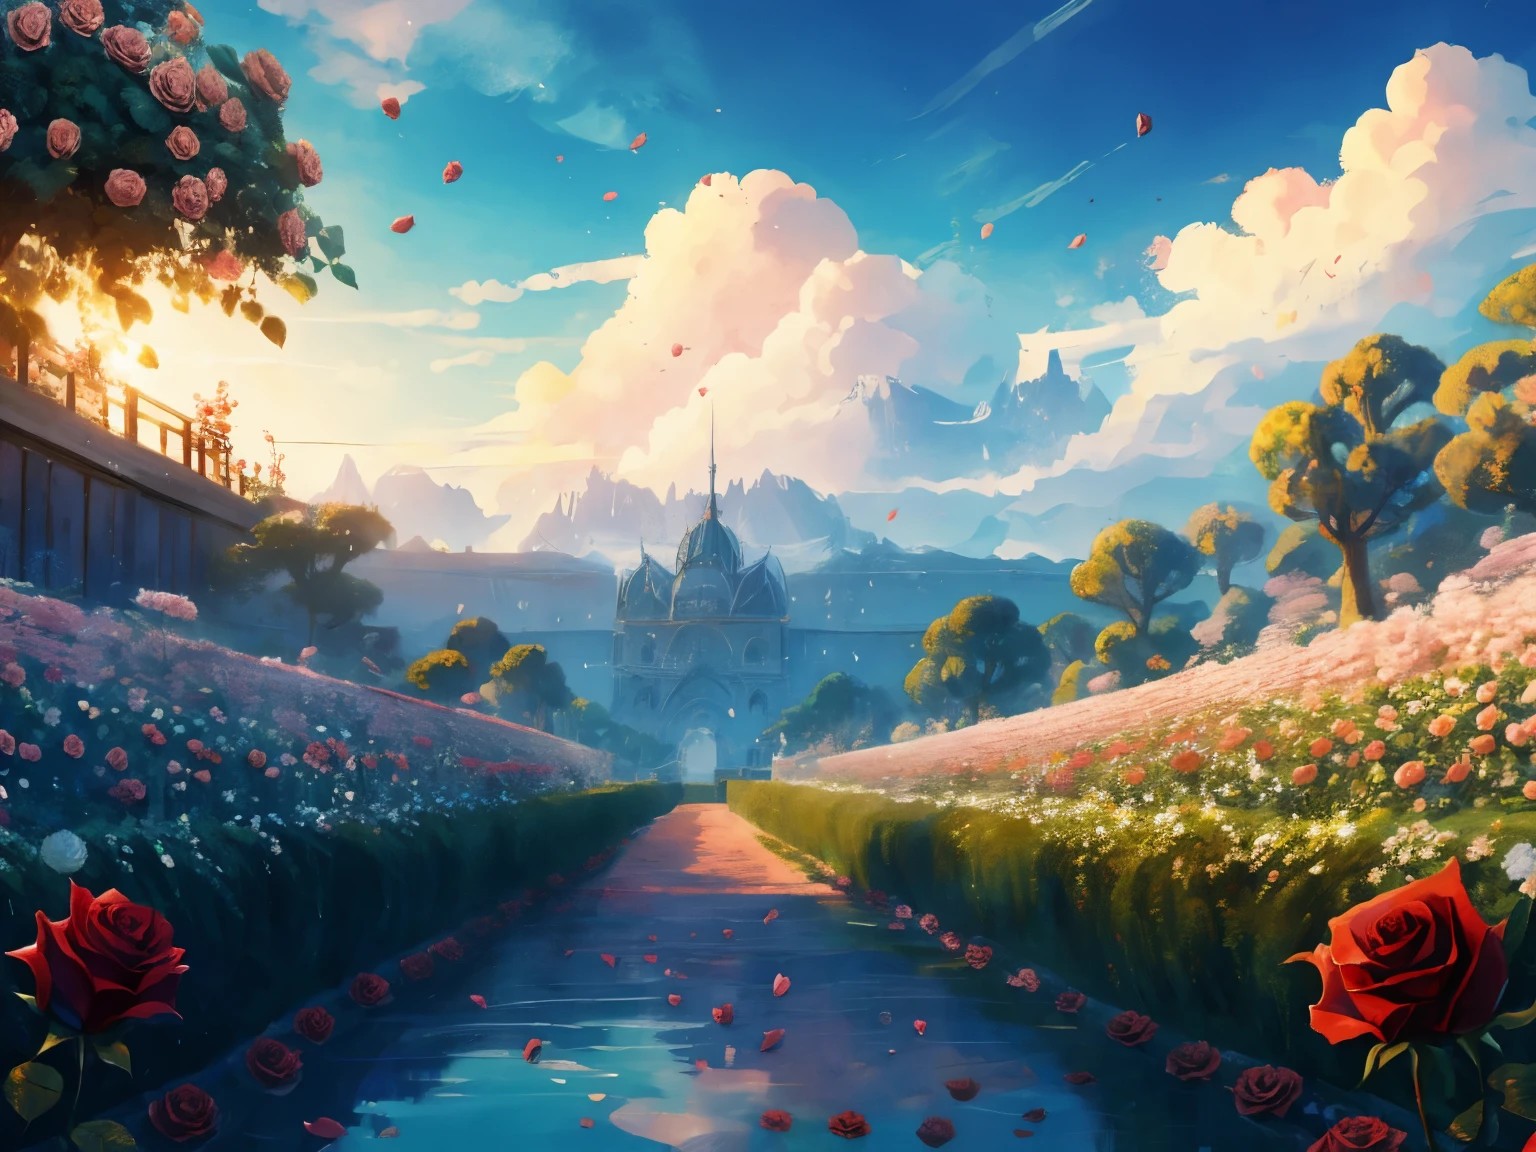 Captura de tela do DVD do filme do Studio Ghibli, (Jardim de rosas bonito:1.4), Nuvens no céu azul, desenhado por Hayao Miyazaki, retro anime